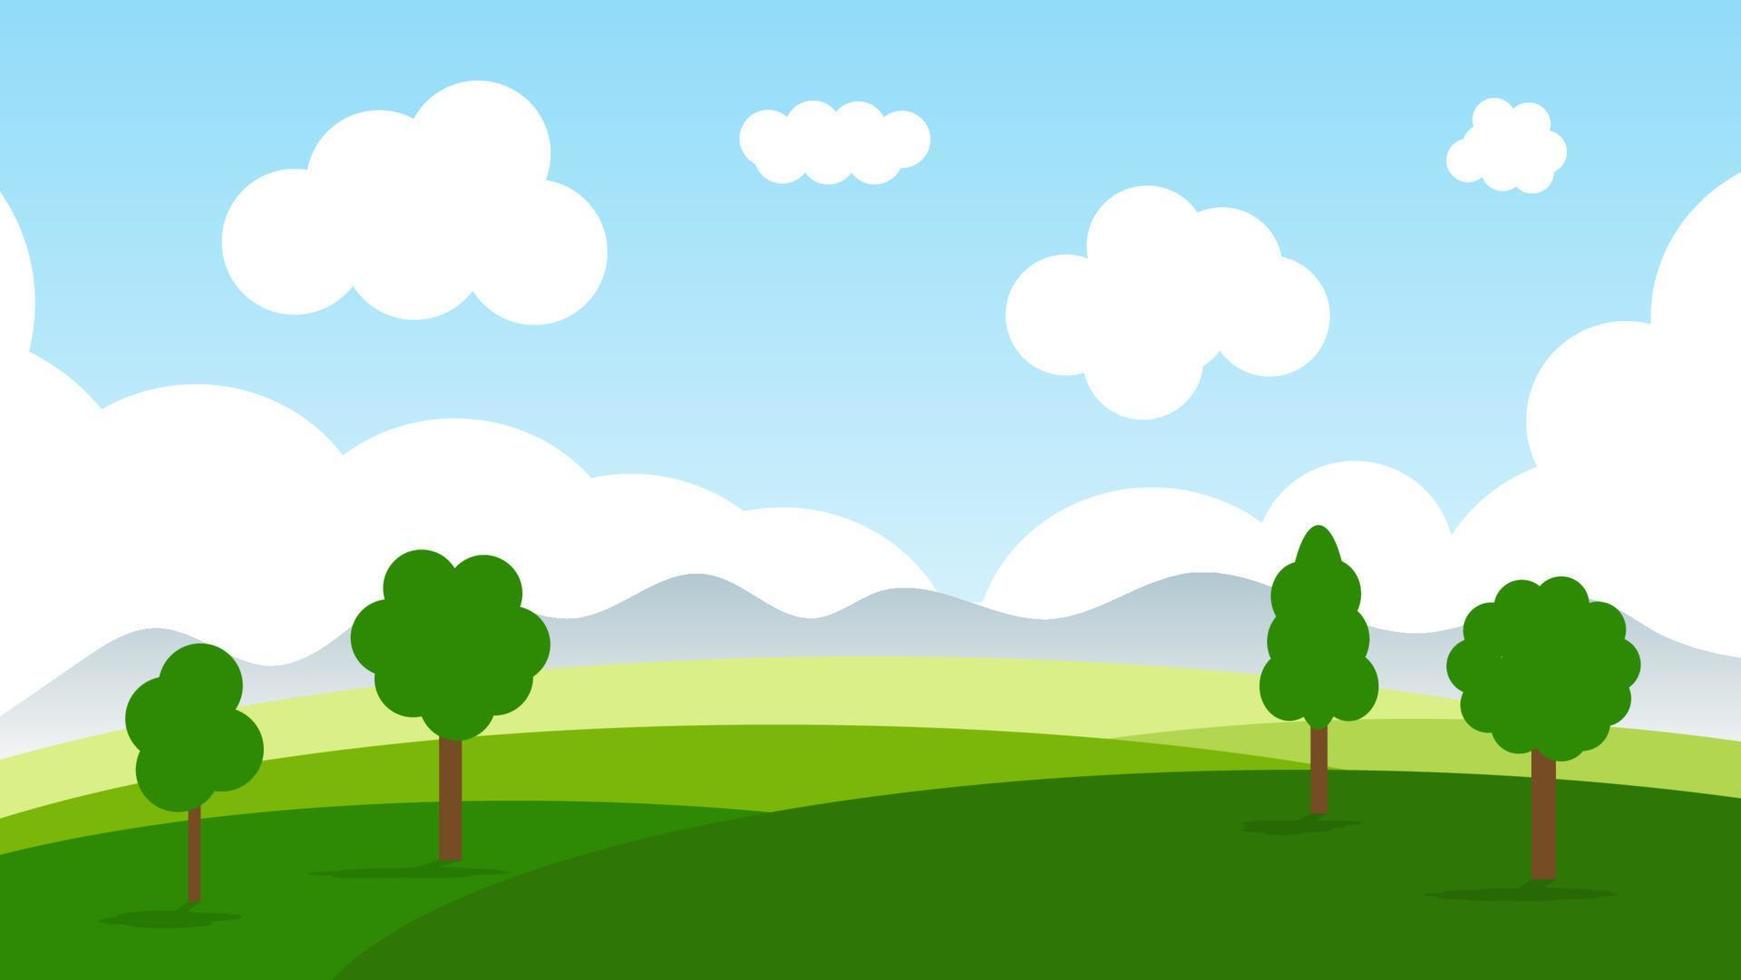 paesaggio cartone animato scena con alberi verdi sulle colline e soffice nuvola bianca sullo sfondo del cielo blu estivo vettore